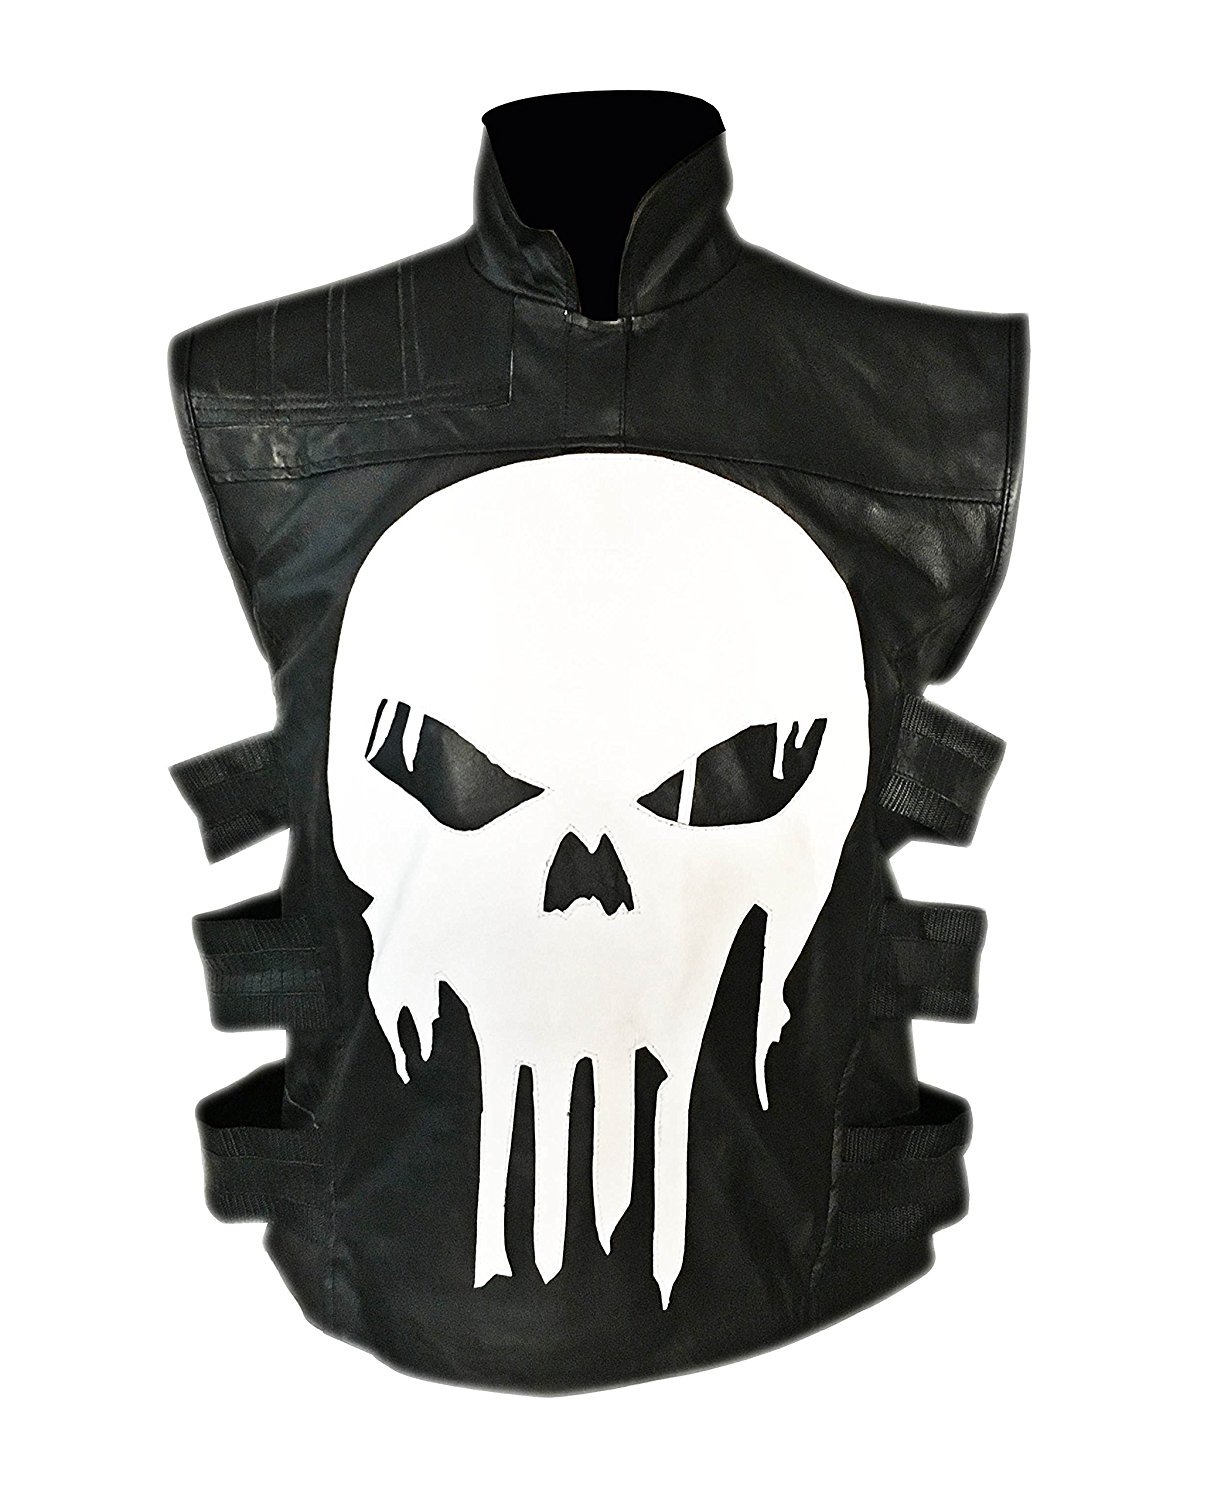 Thomas Jane Punisher Tactical Black Leather Vest